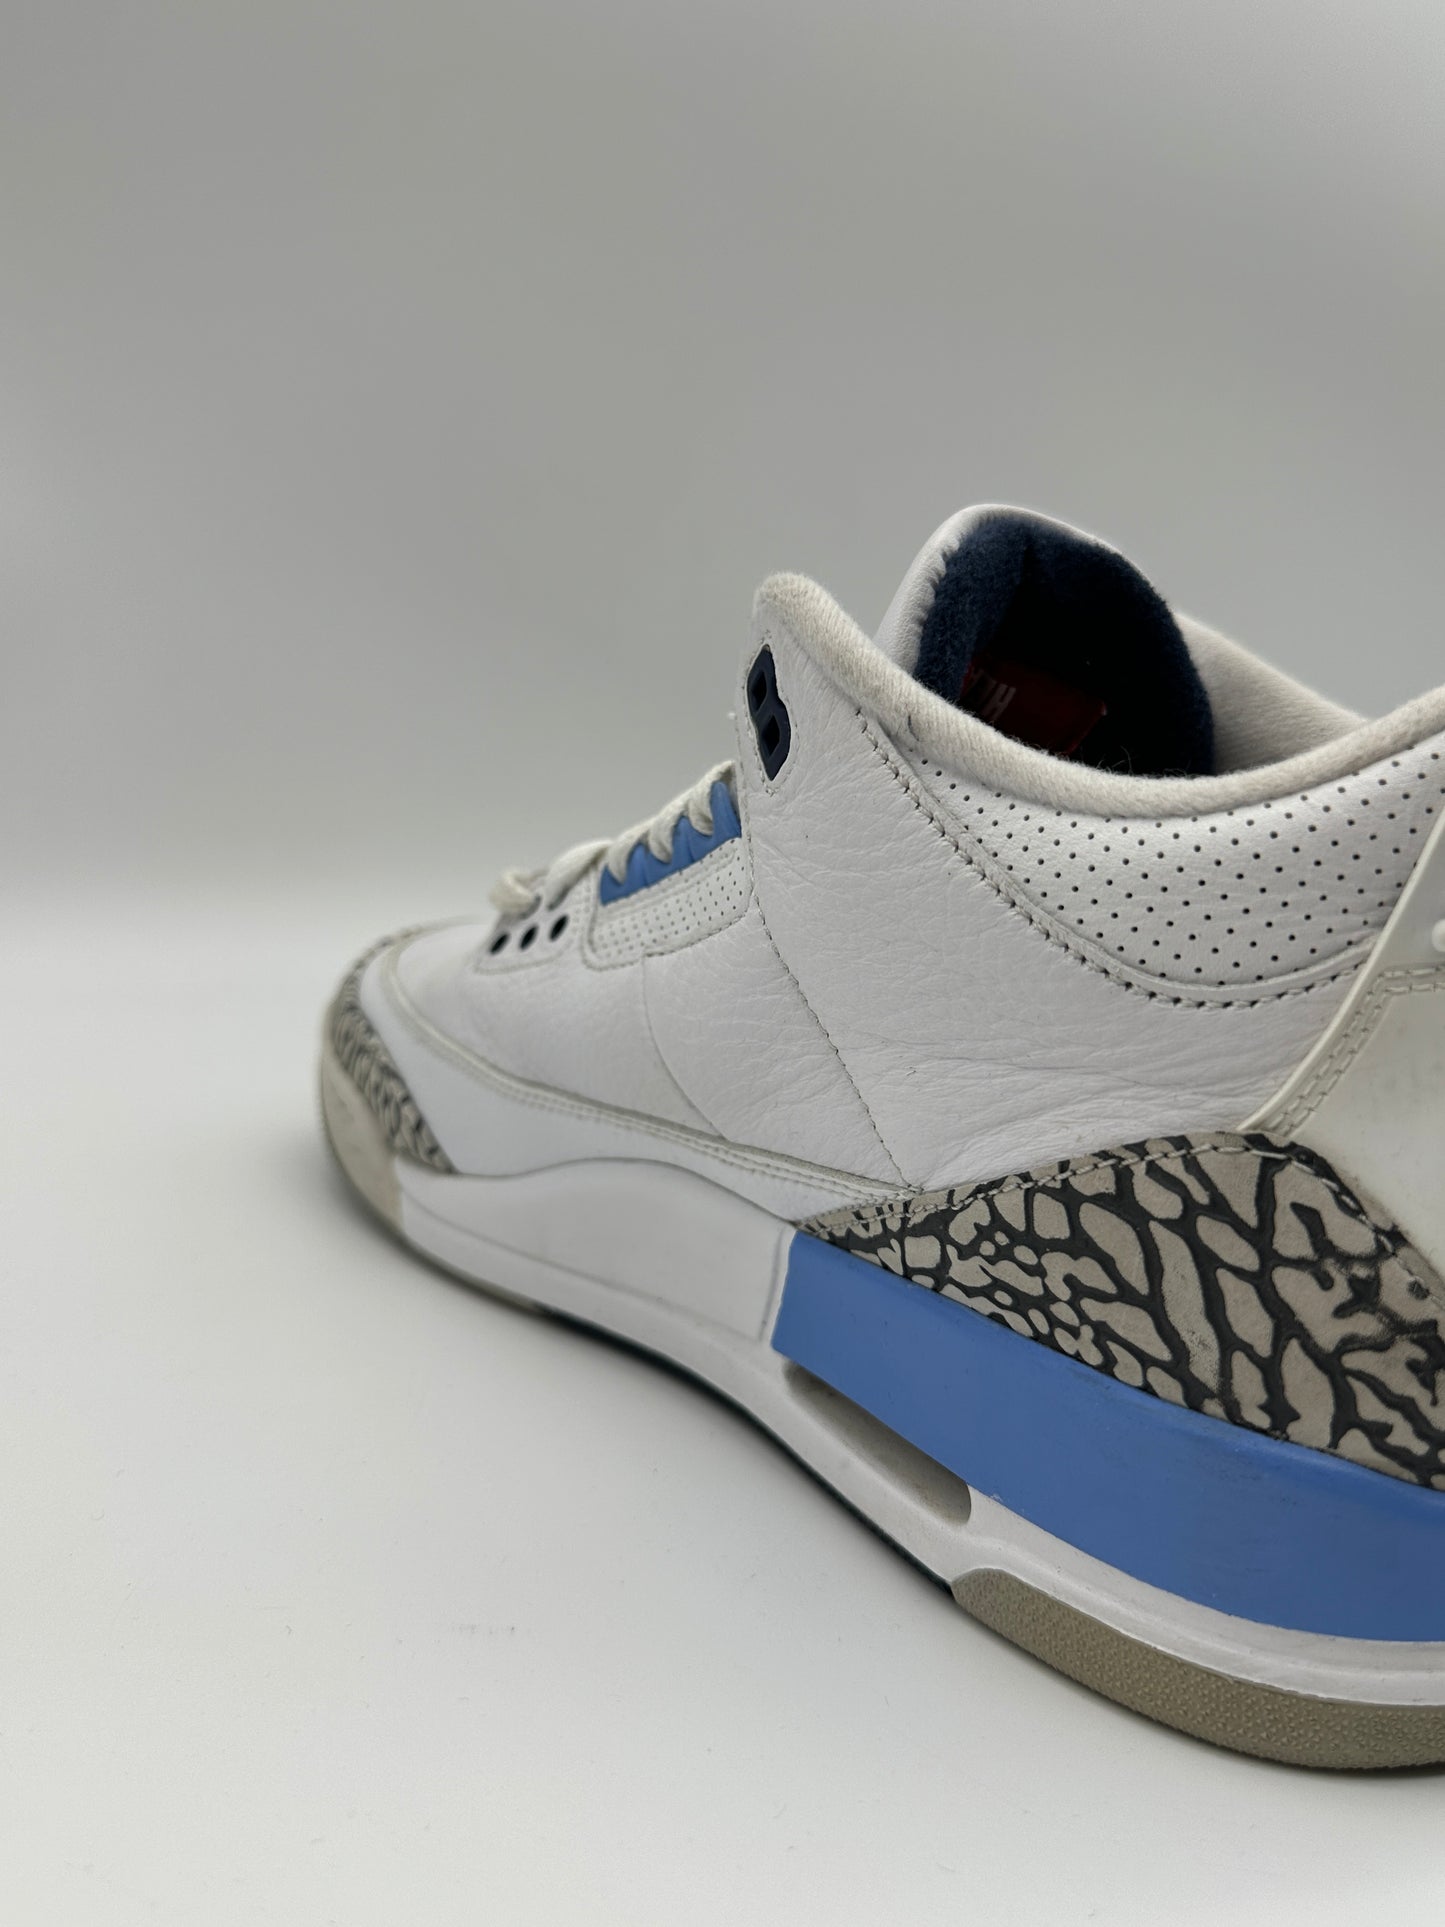 Jordan 3 Sneakers